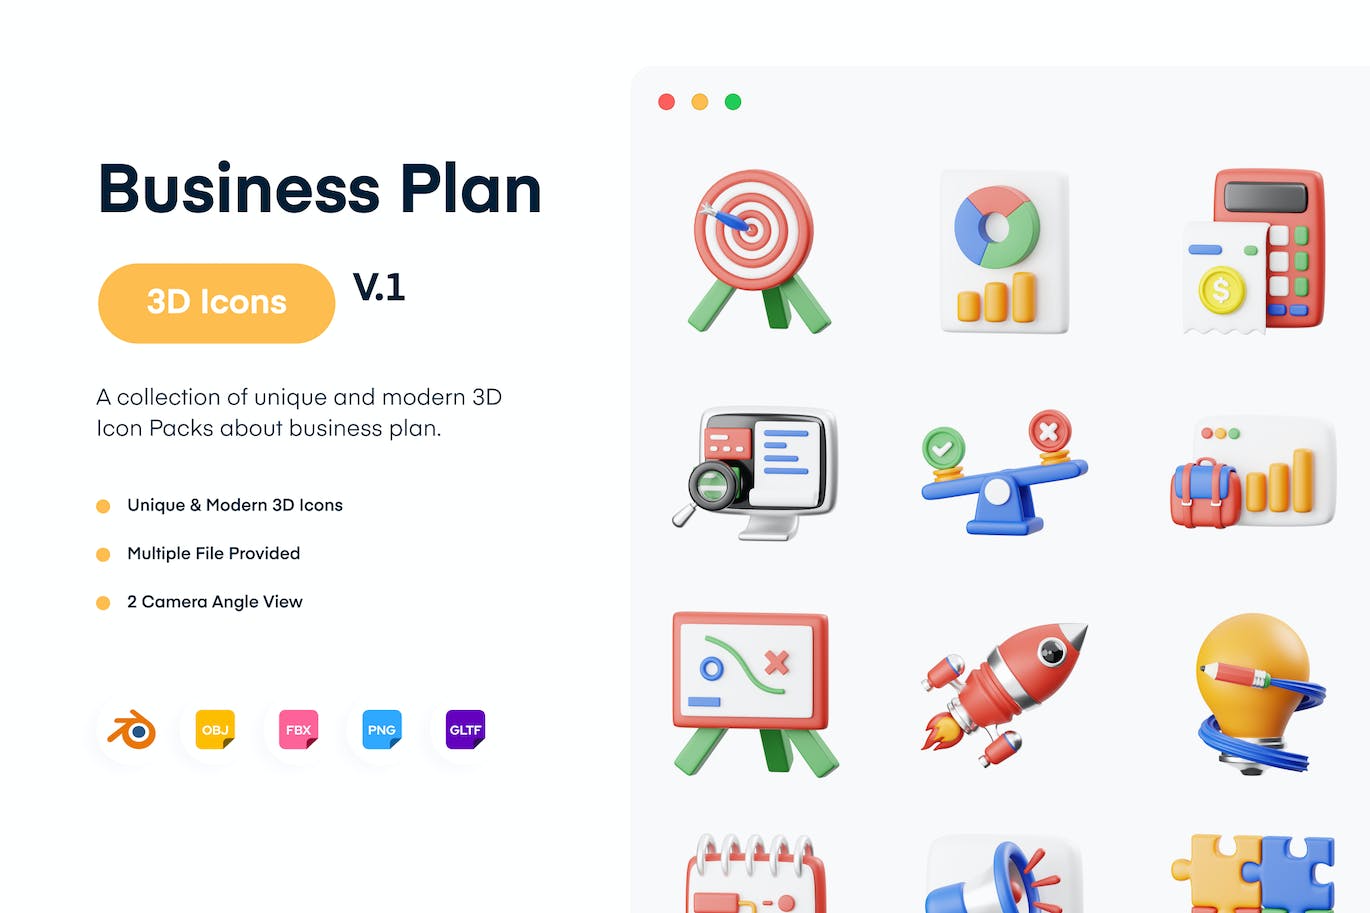 商业计划3D图标集 Business Plan 3D Icon 图标素材 第1张